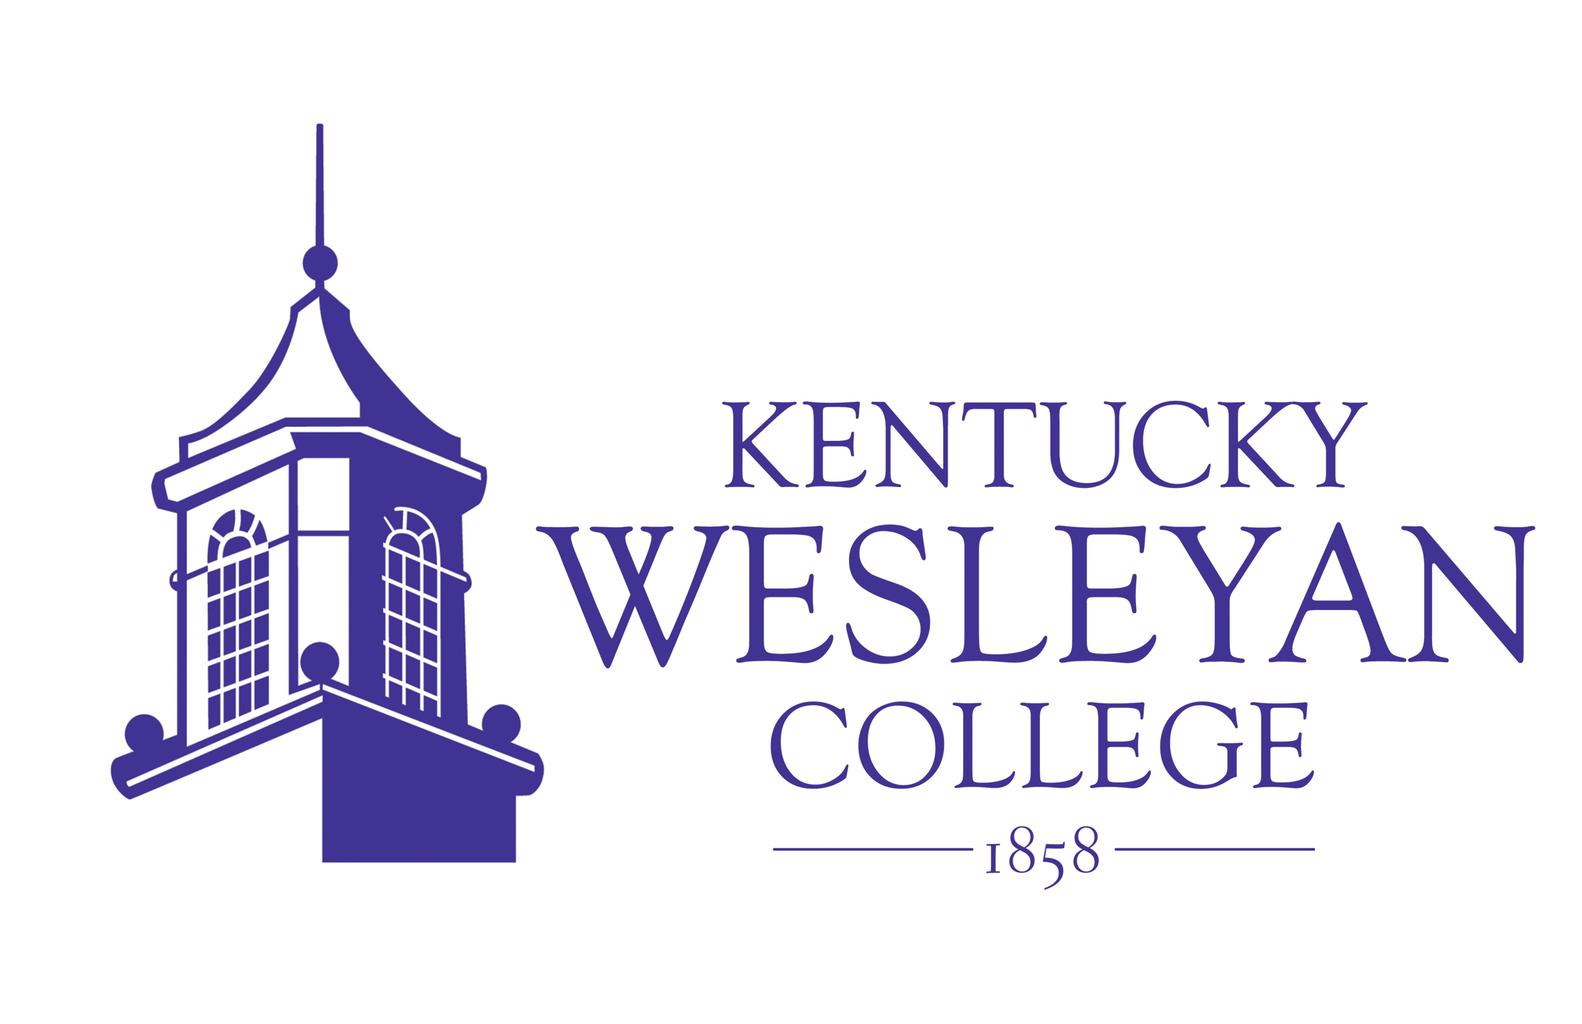 Kentucky Wesleyan College